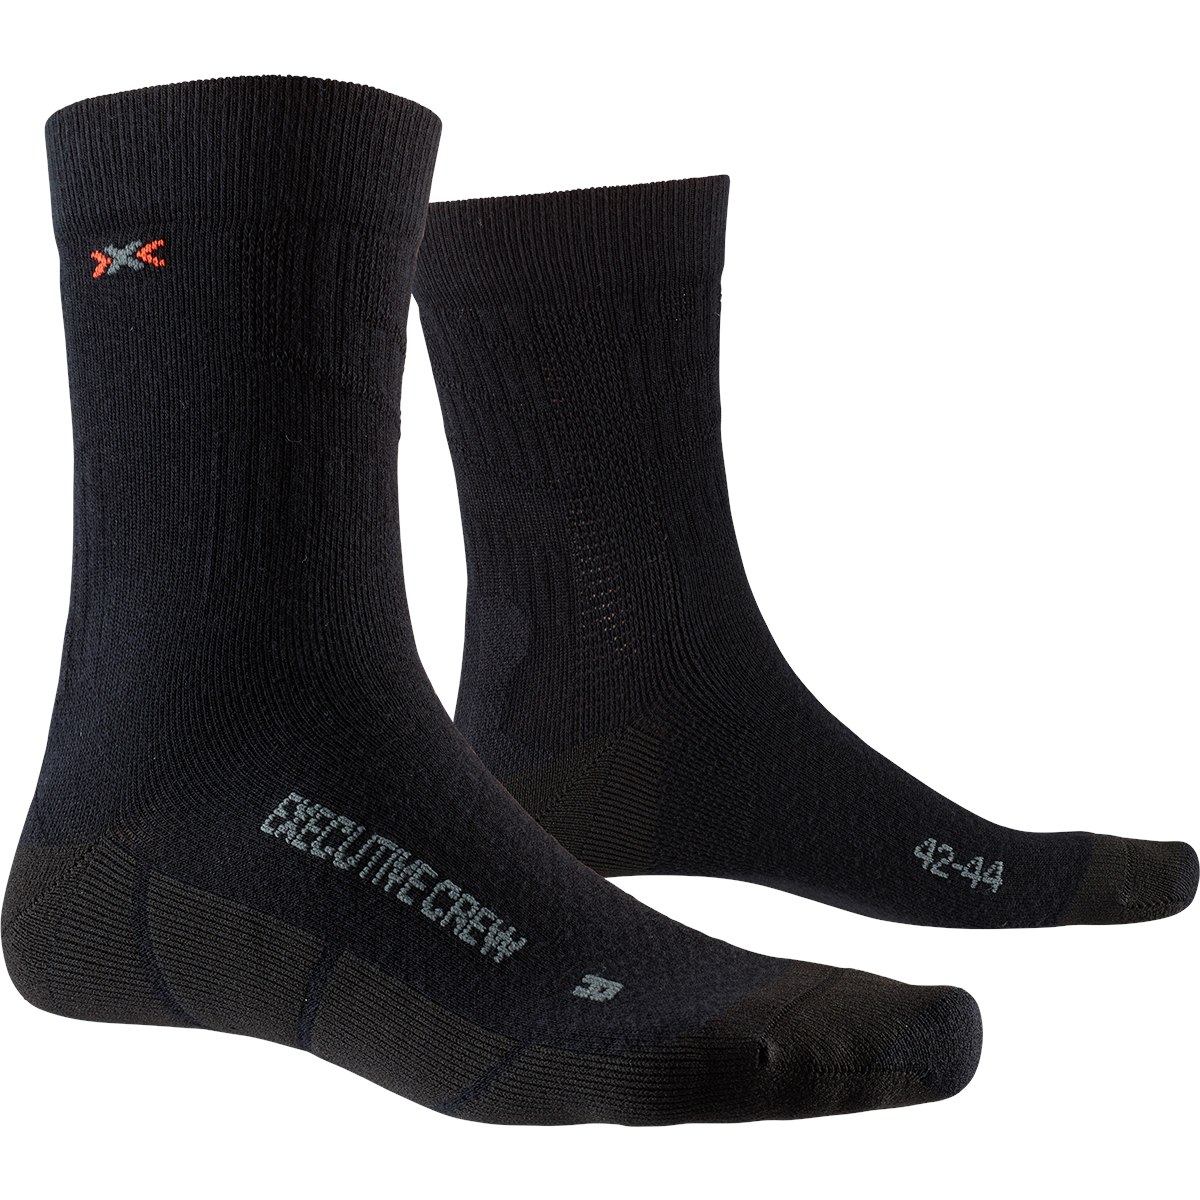 Produktbild von X-Socks Executive Crew Socken - schwarz